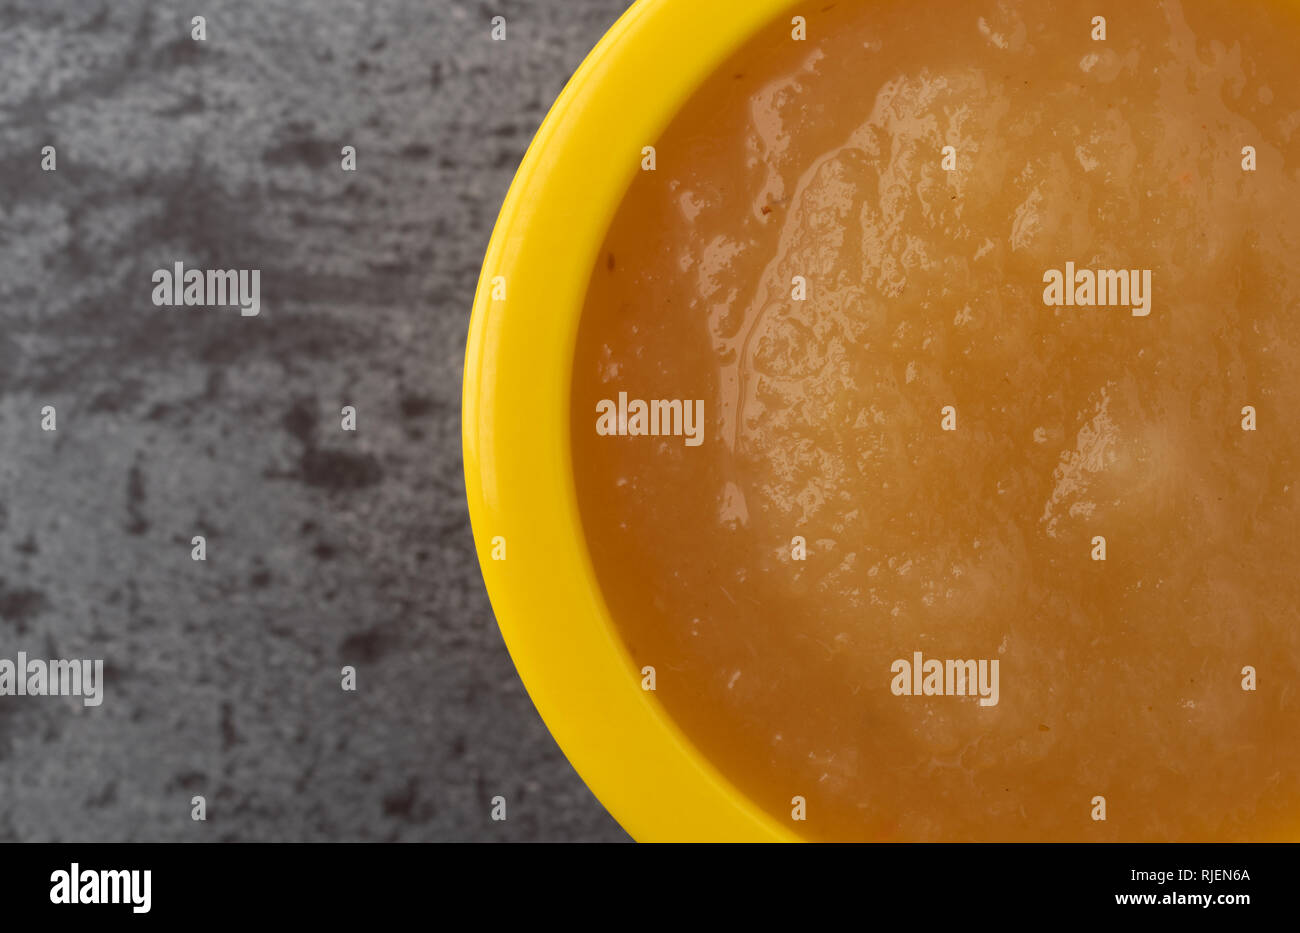 Tettuccio di chiudere la vista di un piccolo giallo ciotola riempita con salsa di mele su sfondo grigio. Foto Stock